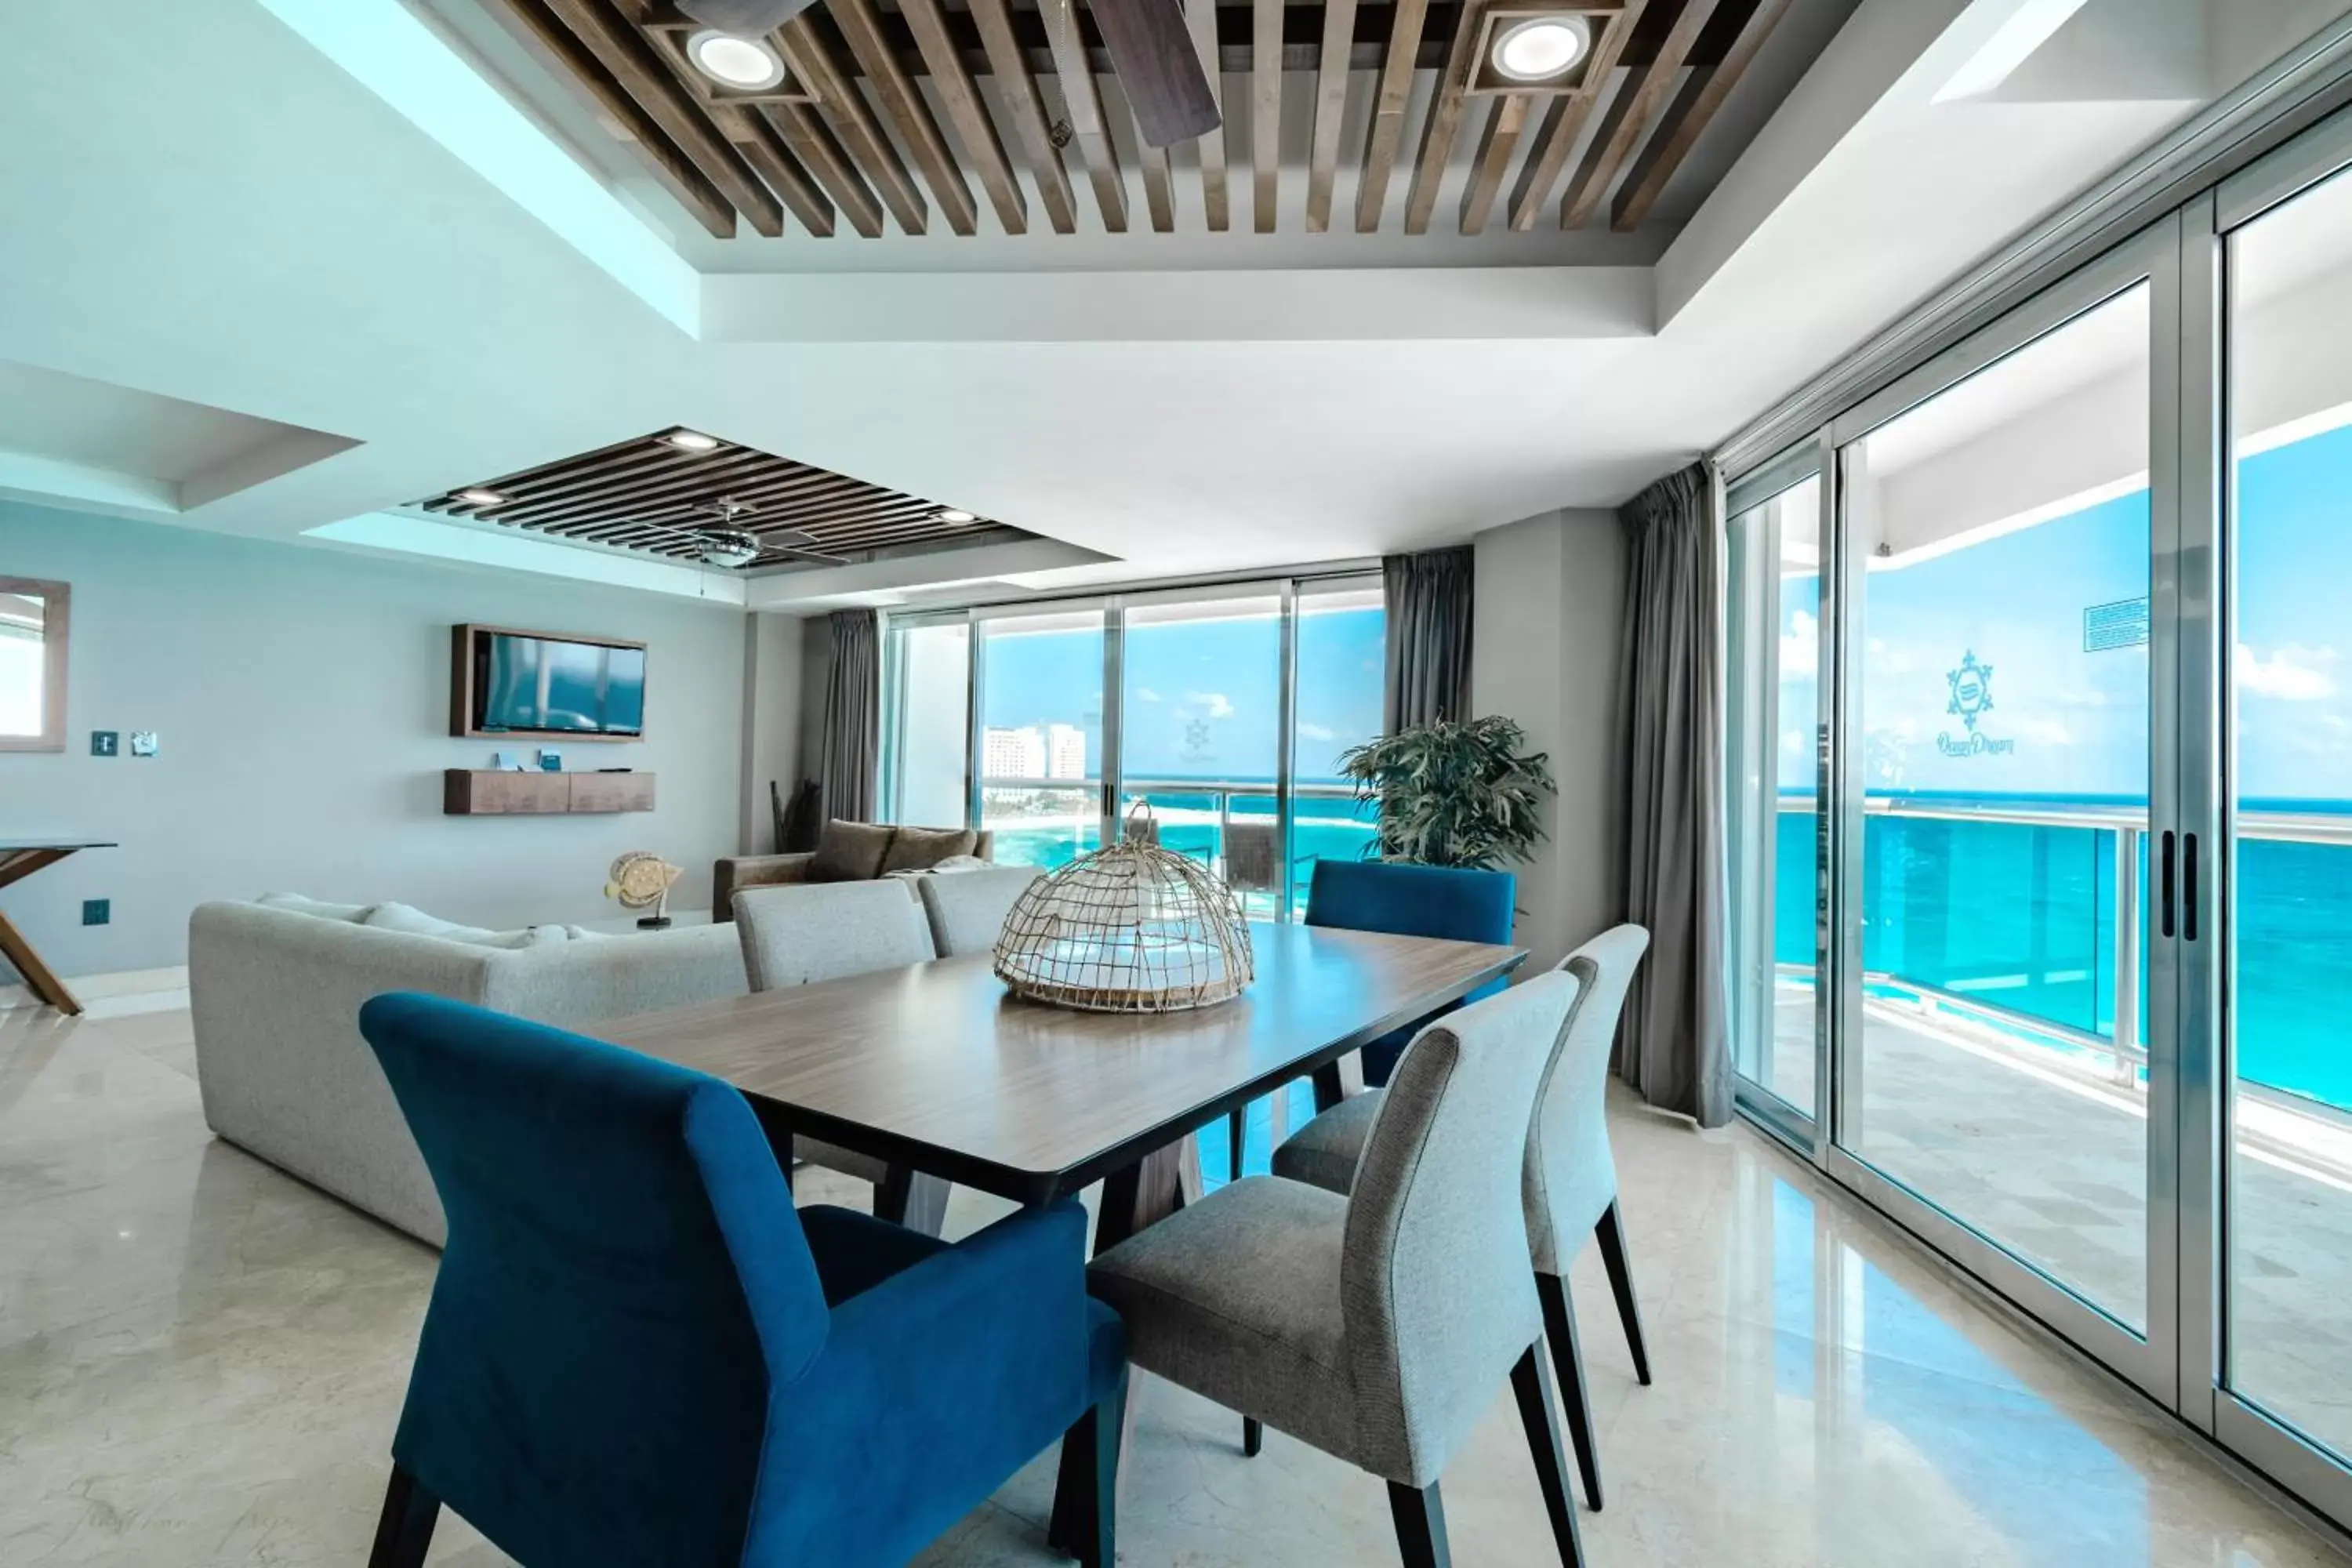 Living room in Ocean Dream Cancun by GuruHotel